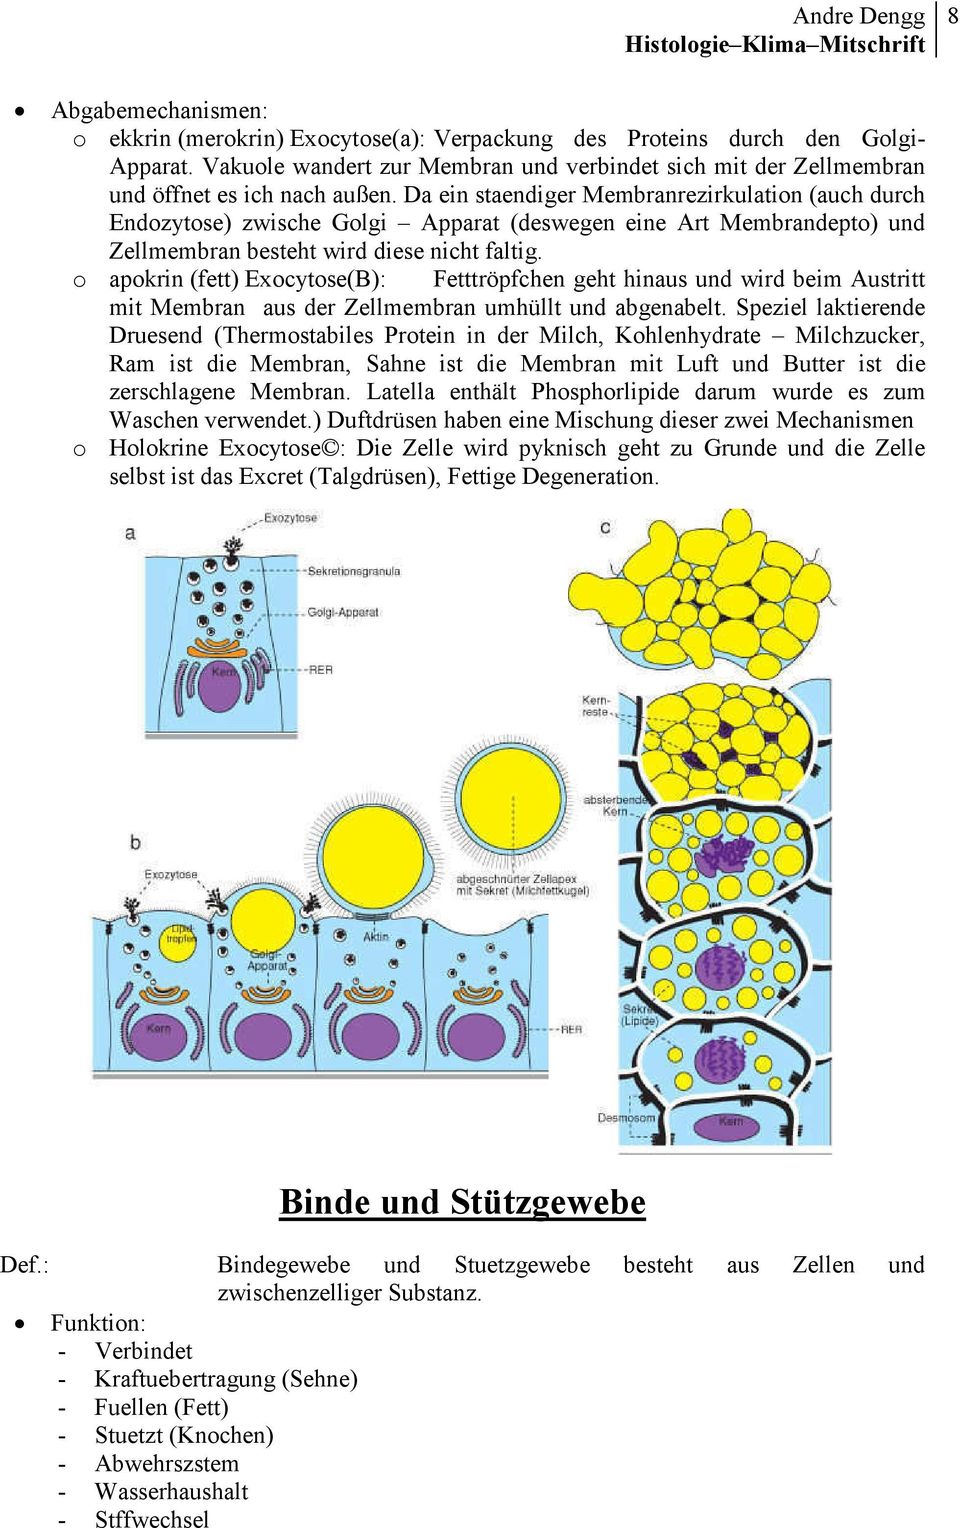 apokrin (fett) Exocytose(B): Fetttröpfchen geht hinaus und wird beim Austritt mit Membran aus der Zellmembran umhüllt und abgenabelt.